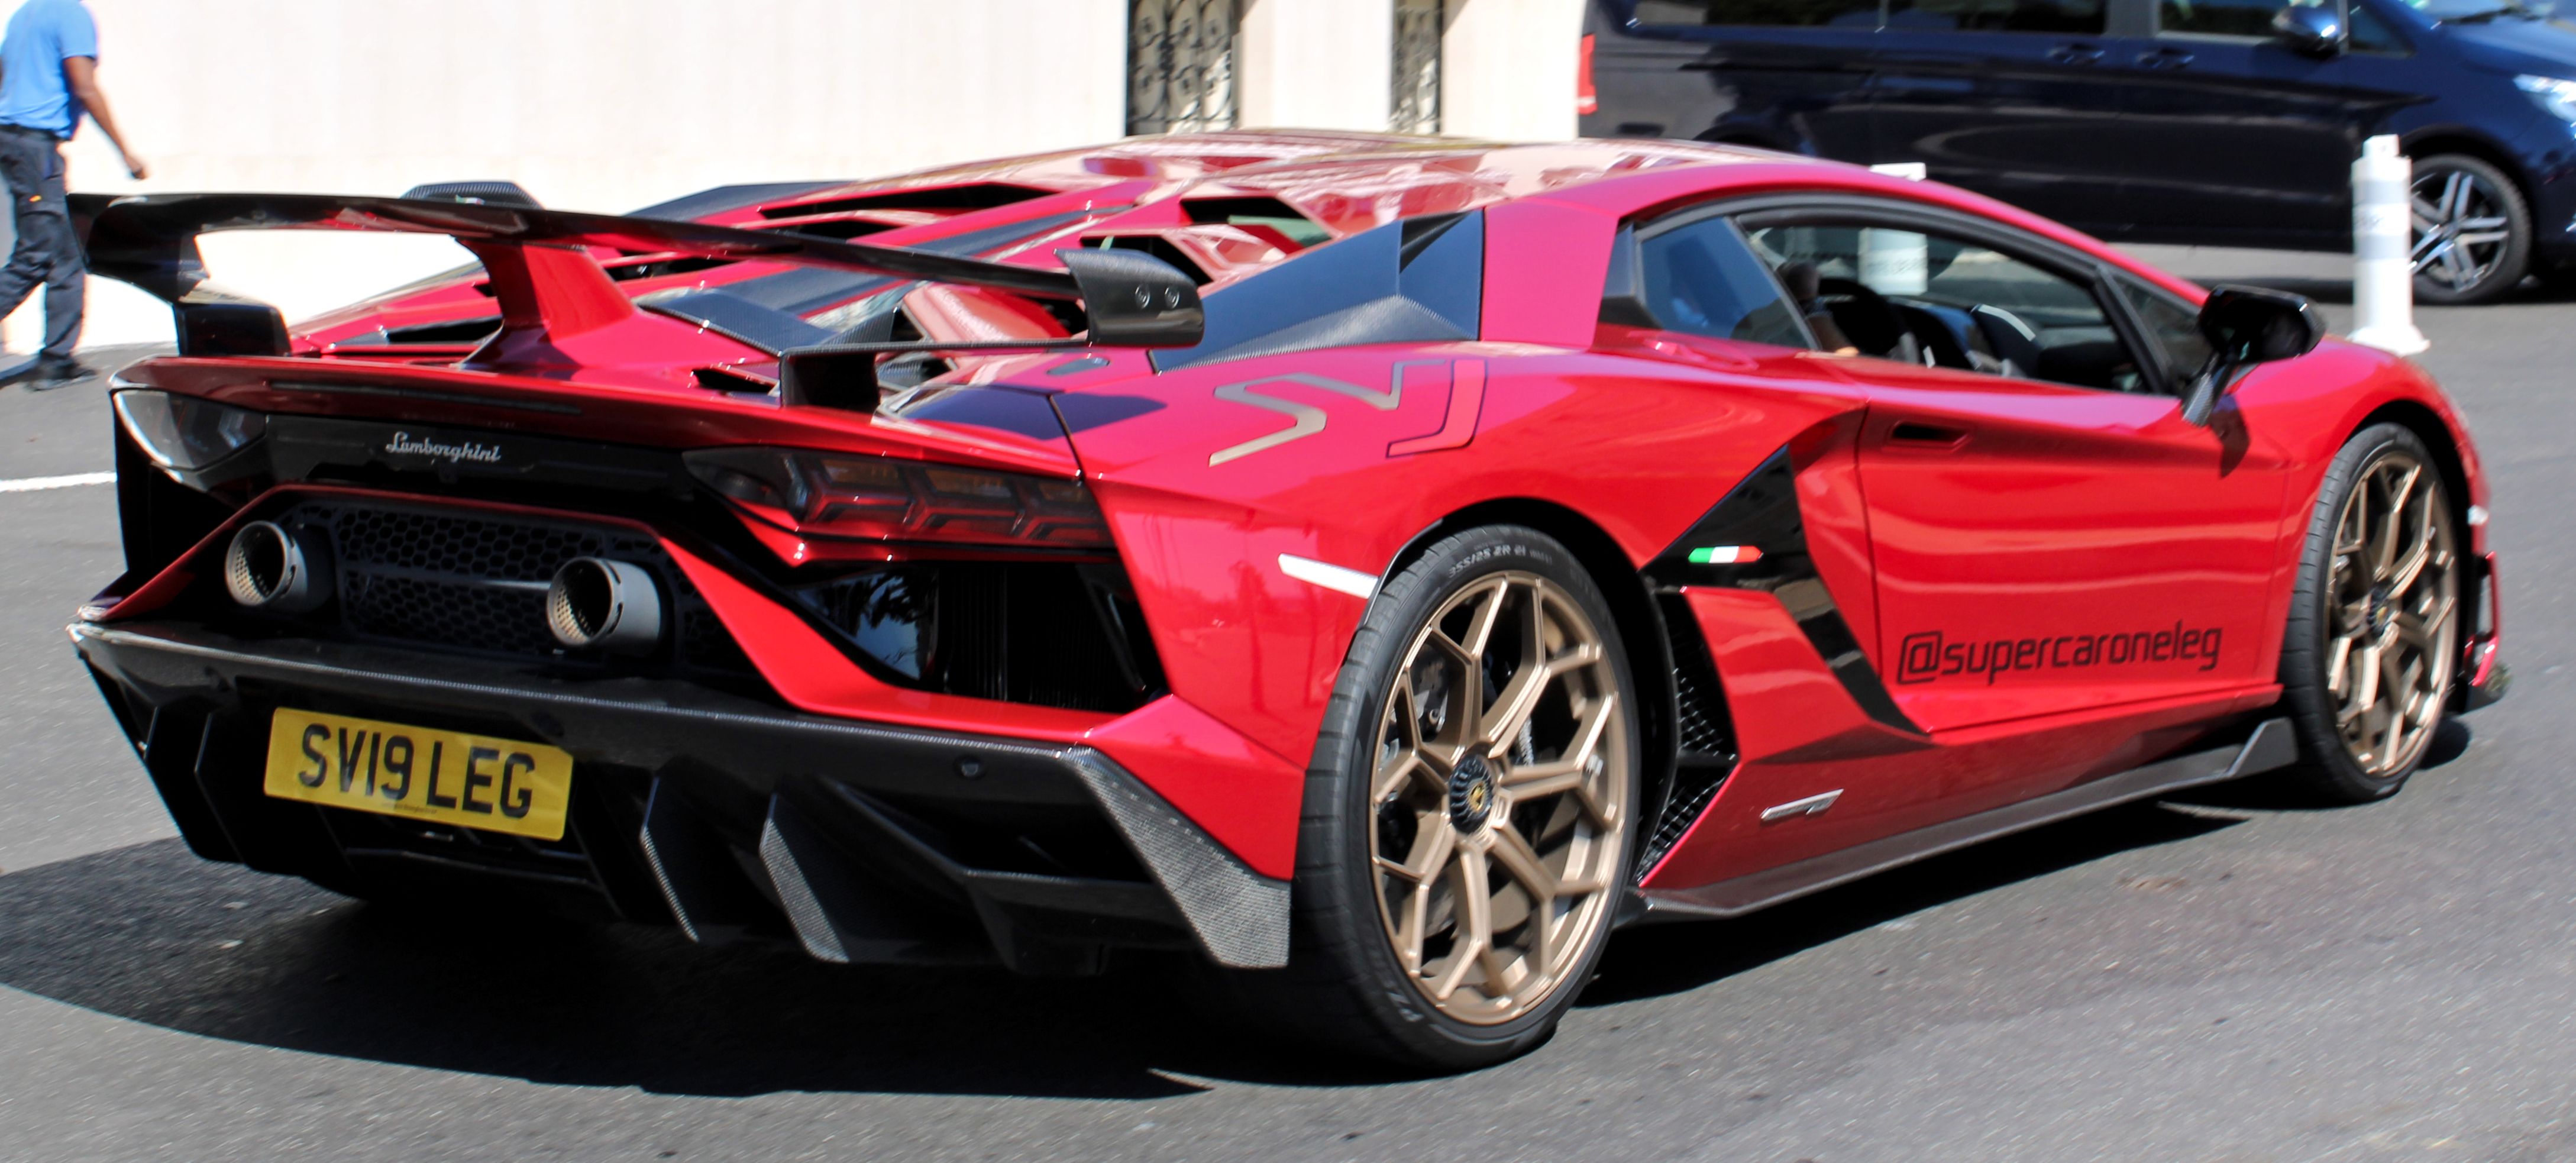 Lamborghini_Aventador_SVJ_Monaco_IMG_1001